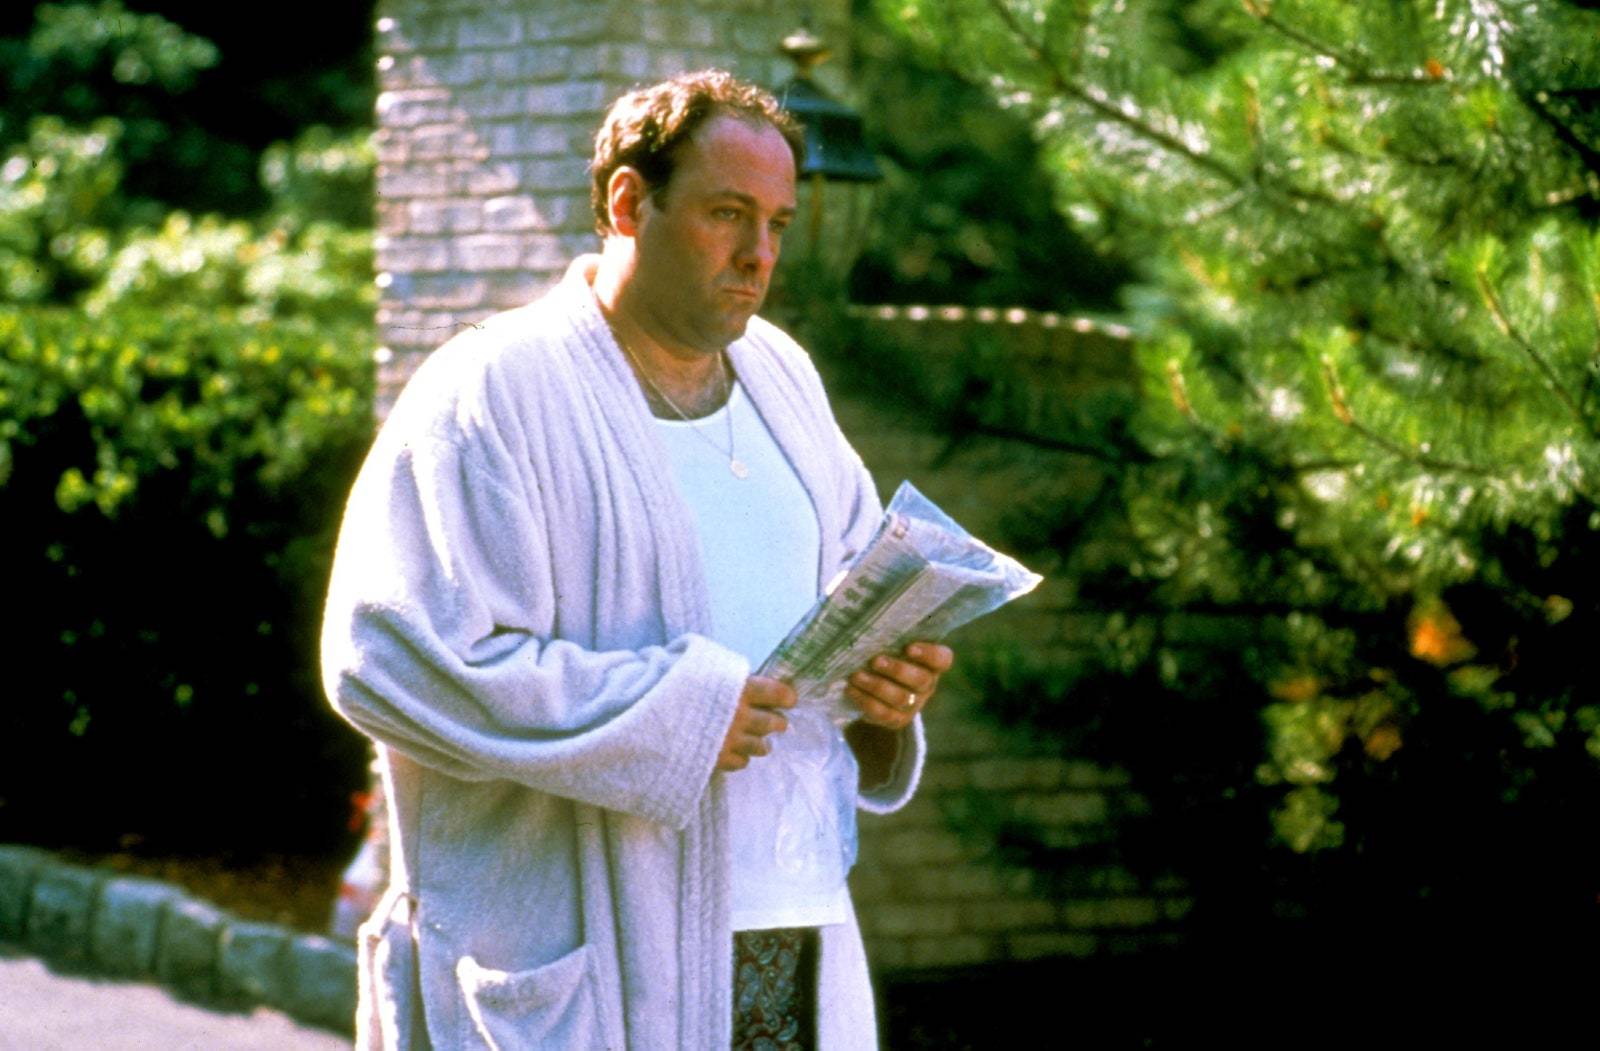 Tony Sorpano, interpretado por el actor James Gandolfini, vestido con albornoz y ropa interior, durante un captulo de Los Soprano.